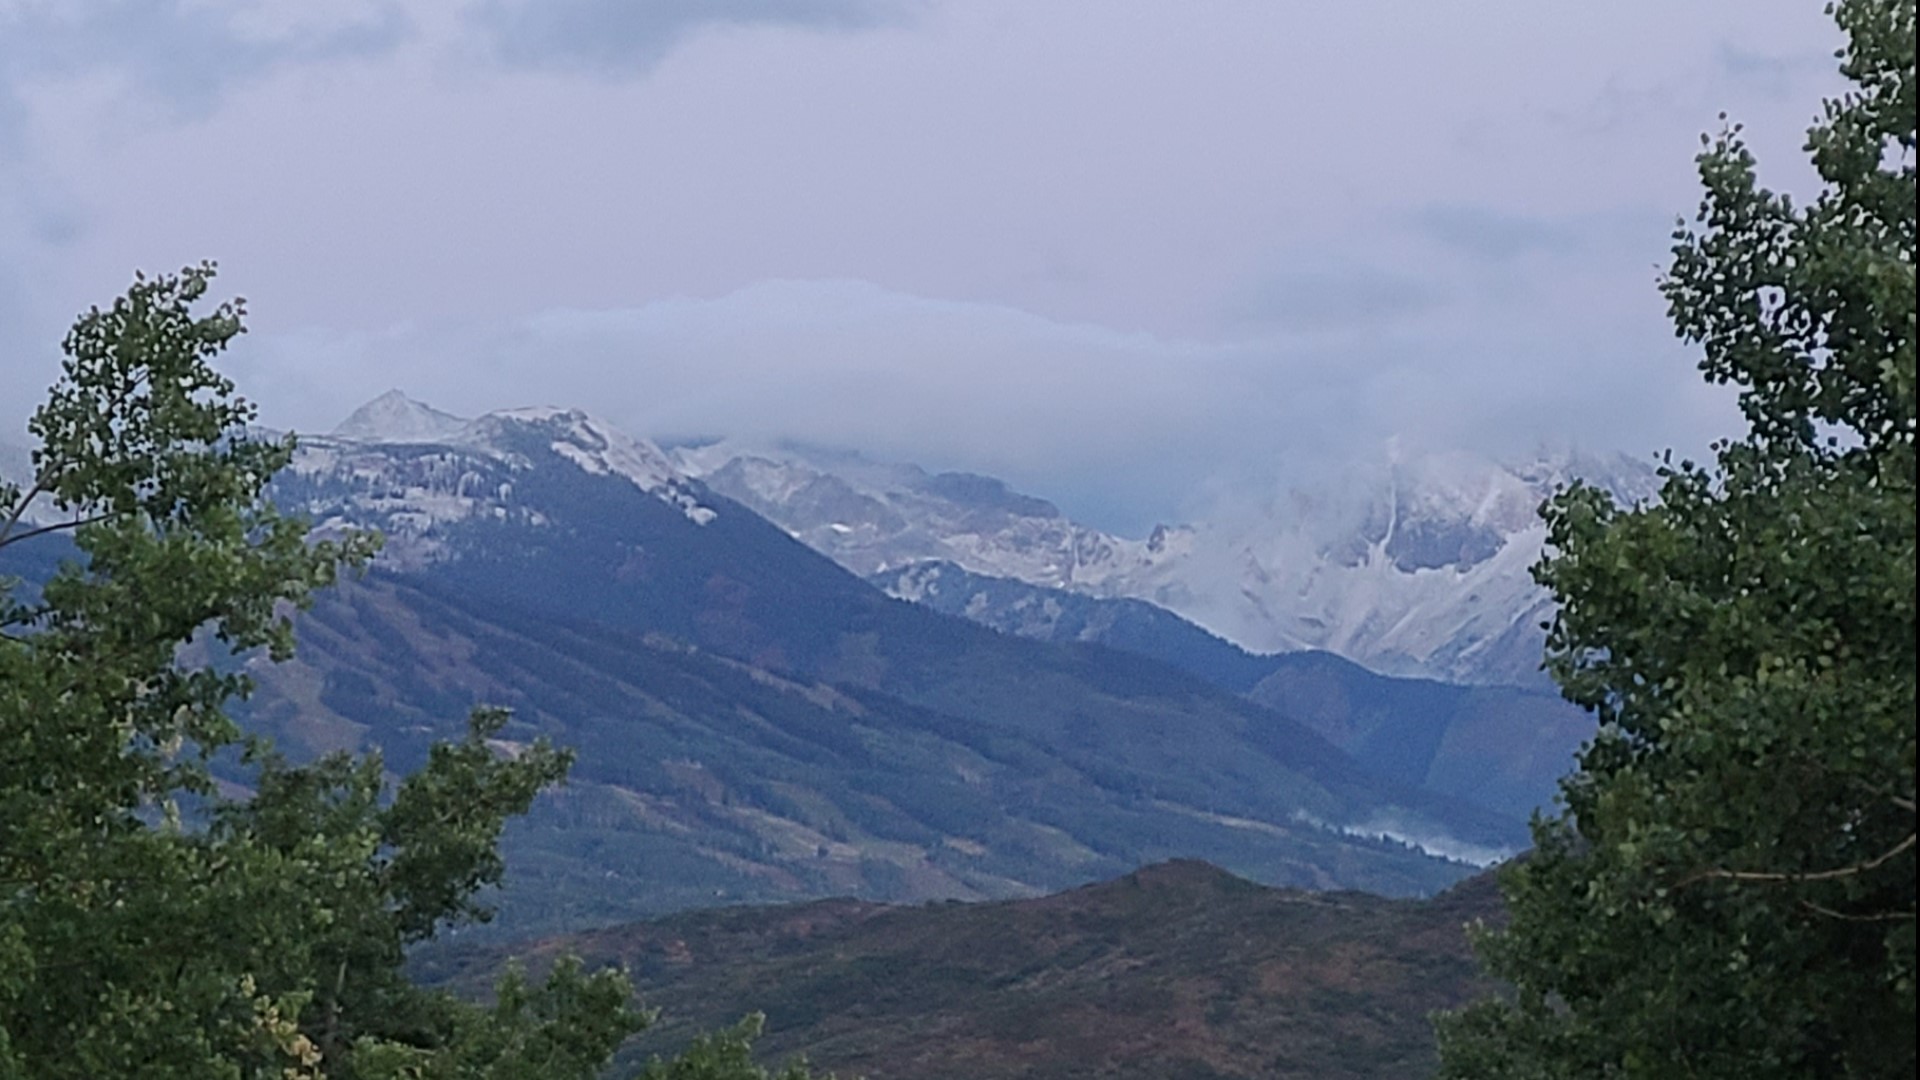 Photos of first Colorado snowfall of 202021 winter season